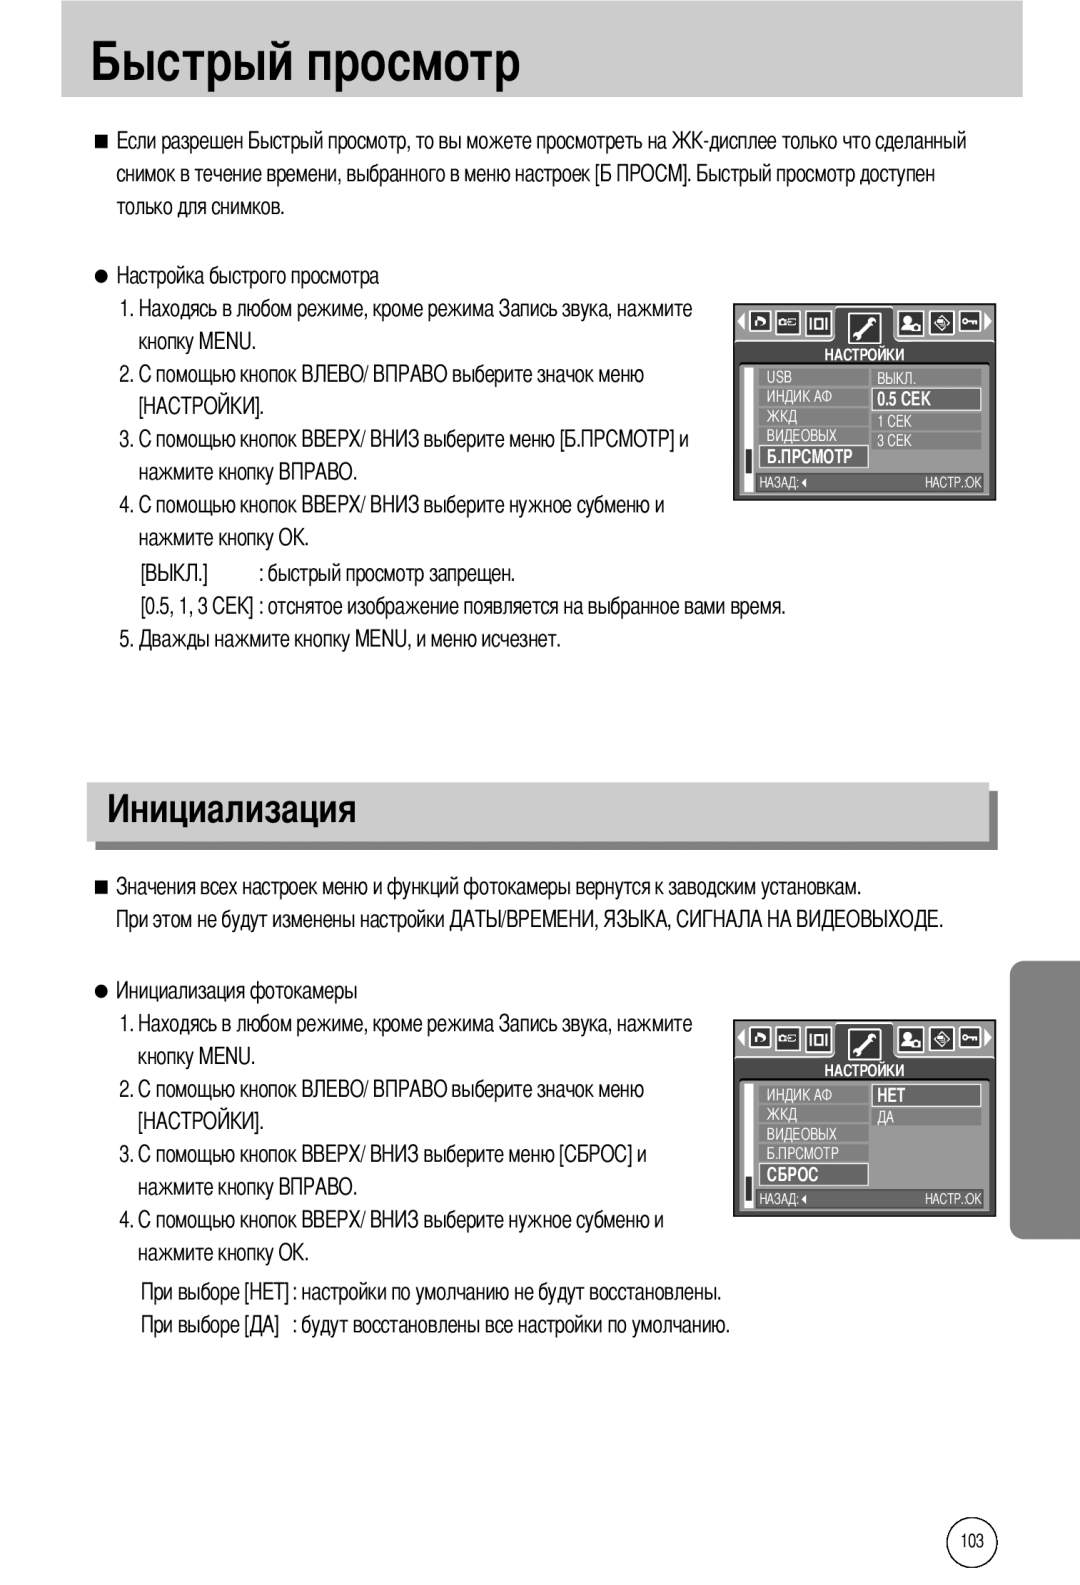 Samsung EC-I50ZZBBB/DE manual нажмите кнопку О быстрый просмотр запрещен, будут восстановлены все настройки по умолчанию 